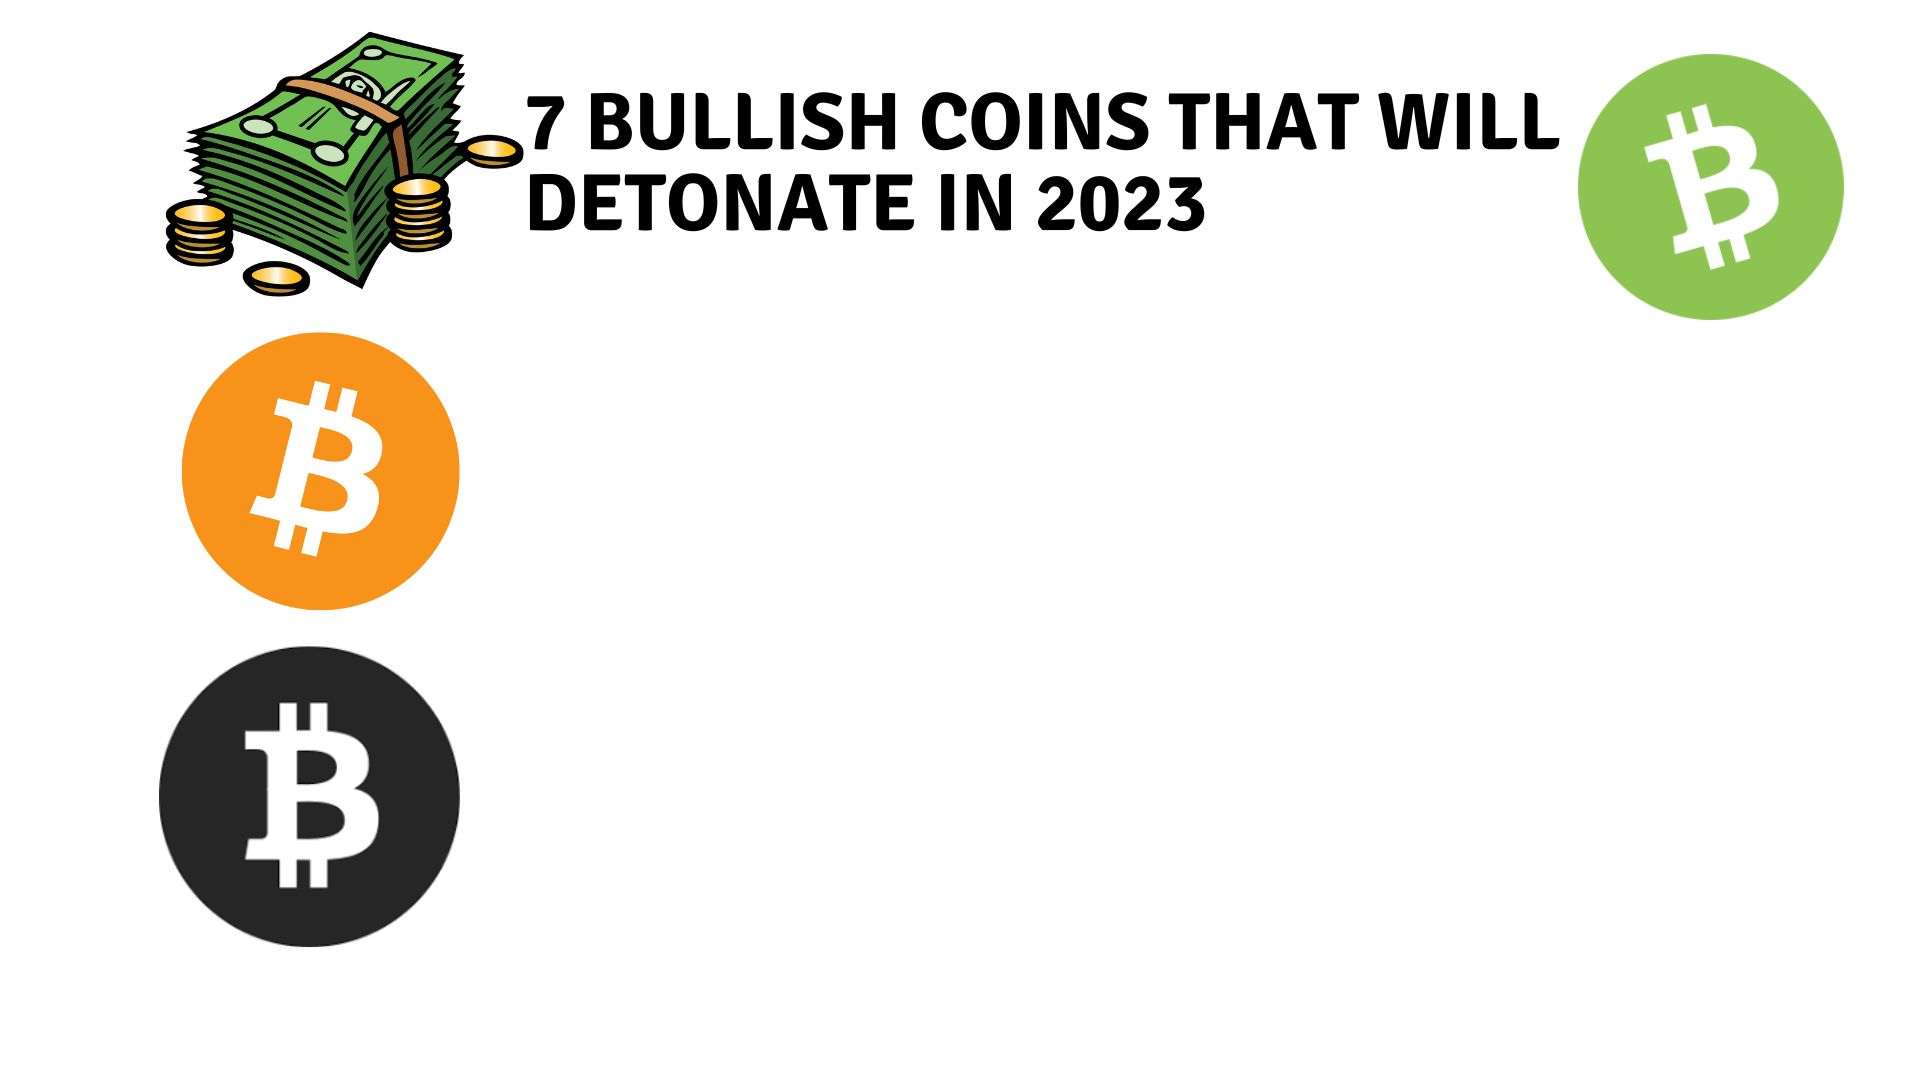 7 bullish coins that will detonate in 2023